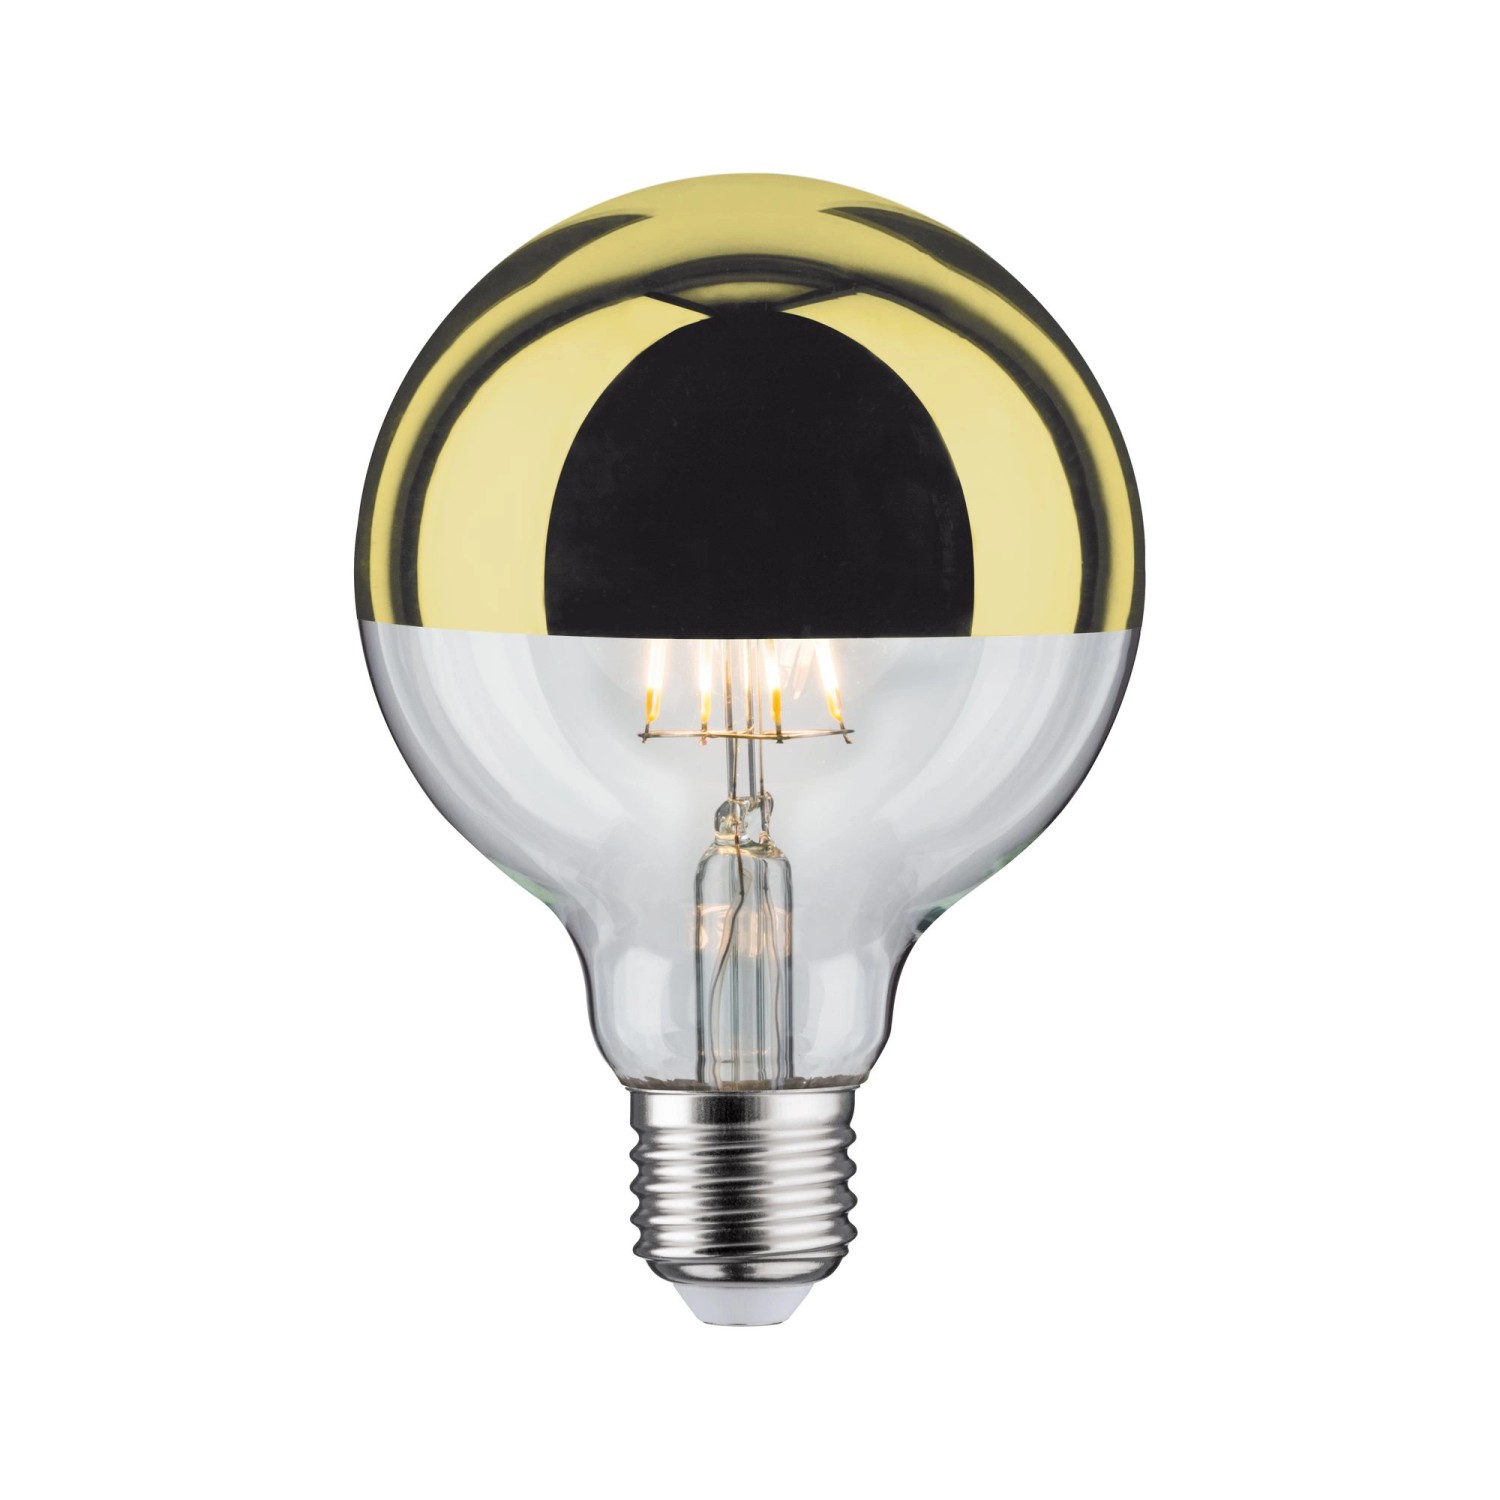 Ampoule Philips classique calotte grise, LED, Culot E27